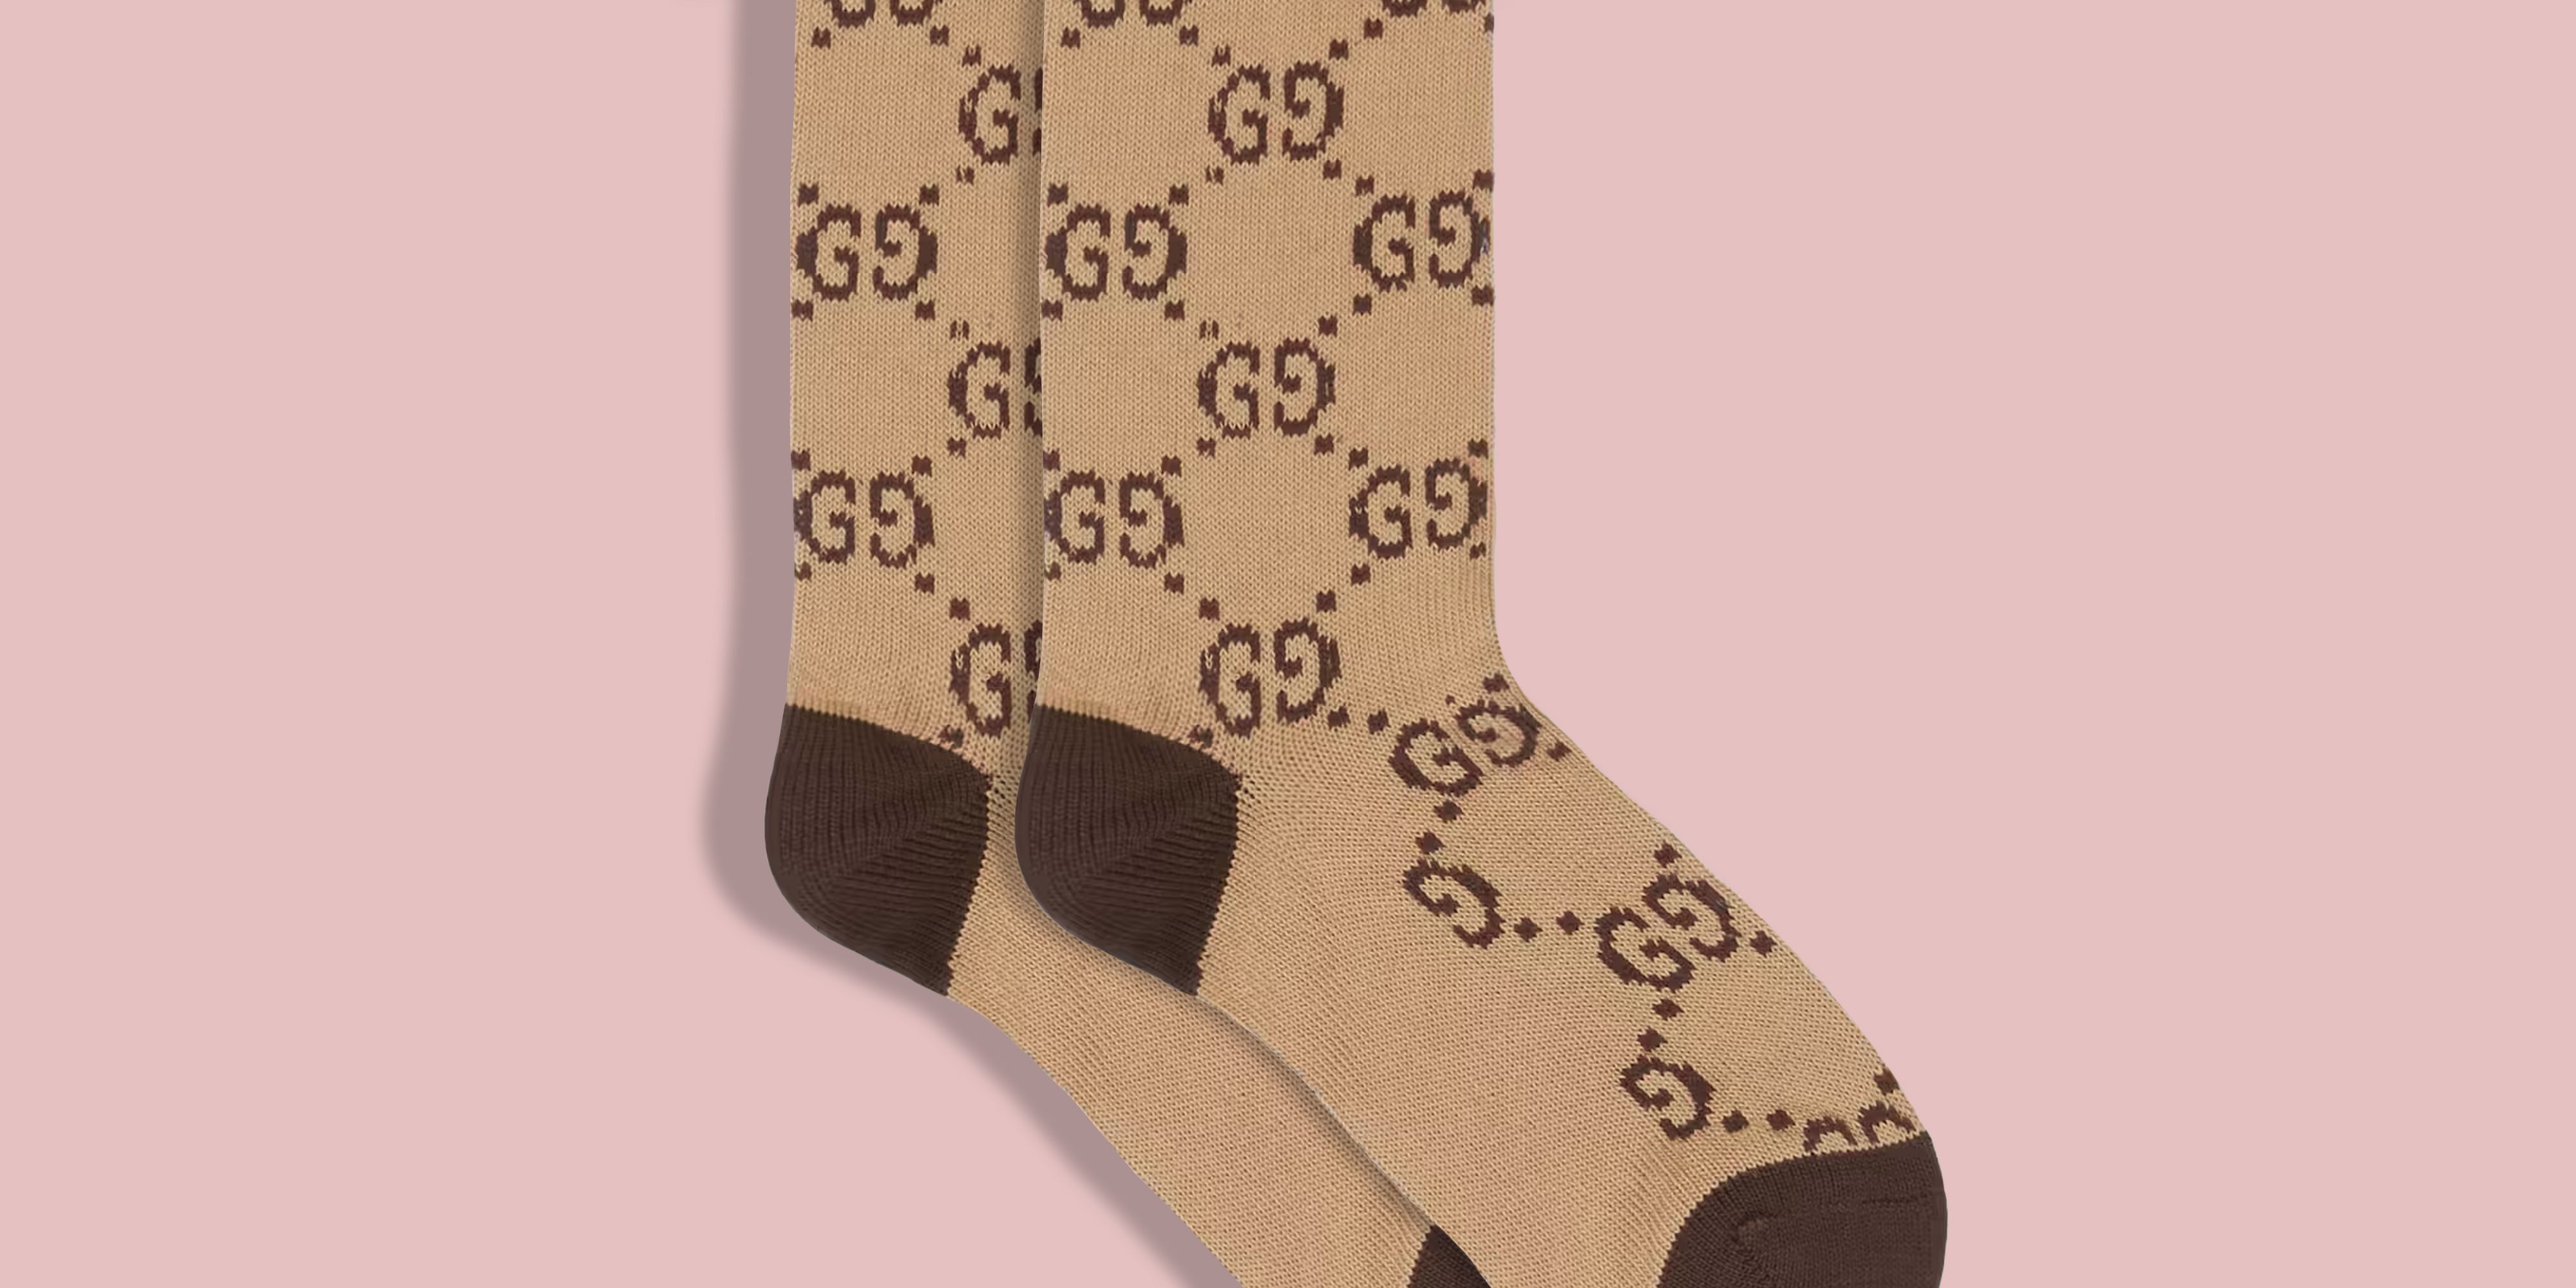 G Patterned Socks